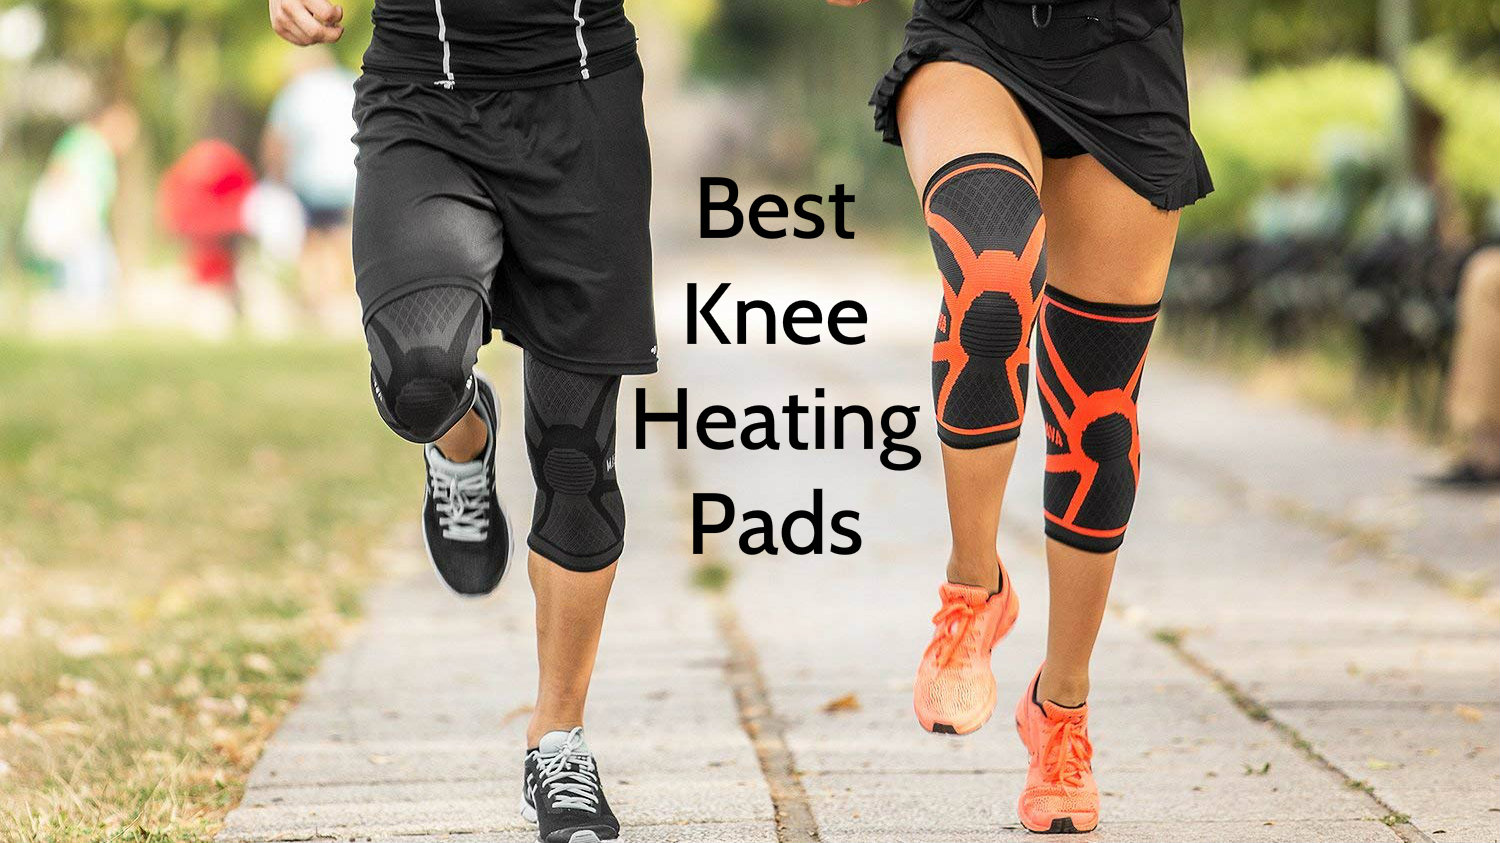 Best Knee Heating Pads